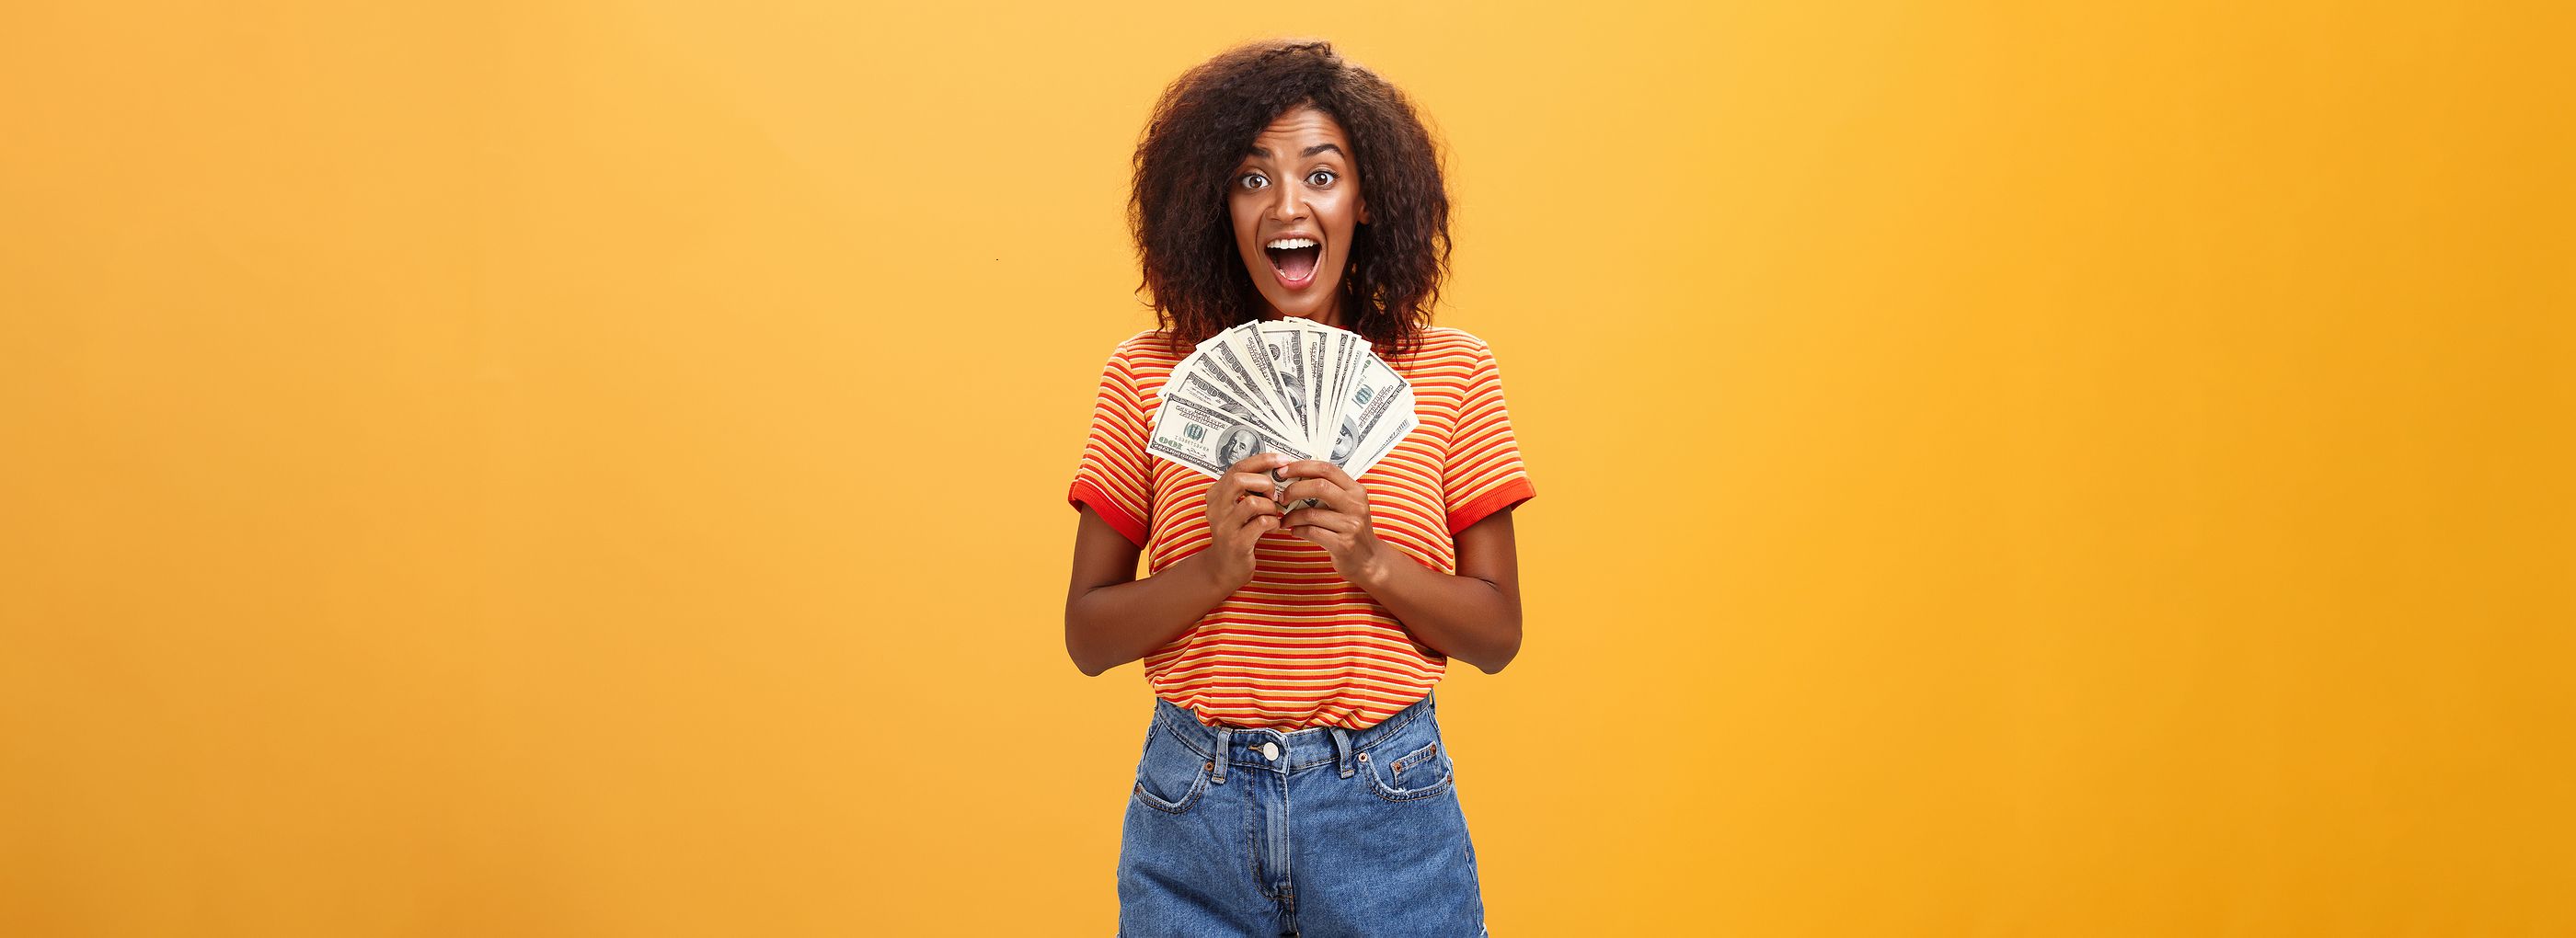 ¿Son más felices las personas con más dinero? La ciencia tiene la respuesta